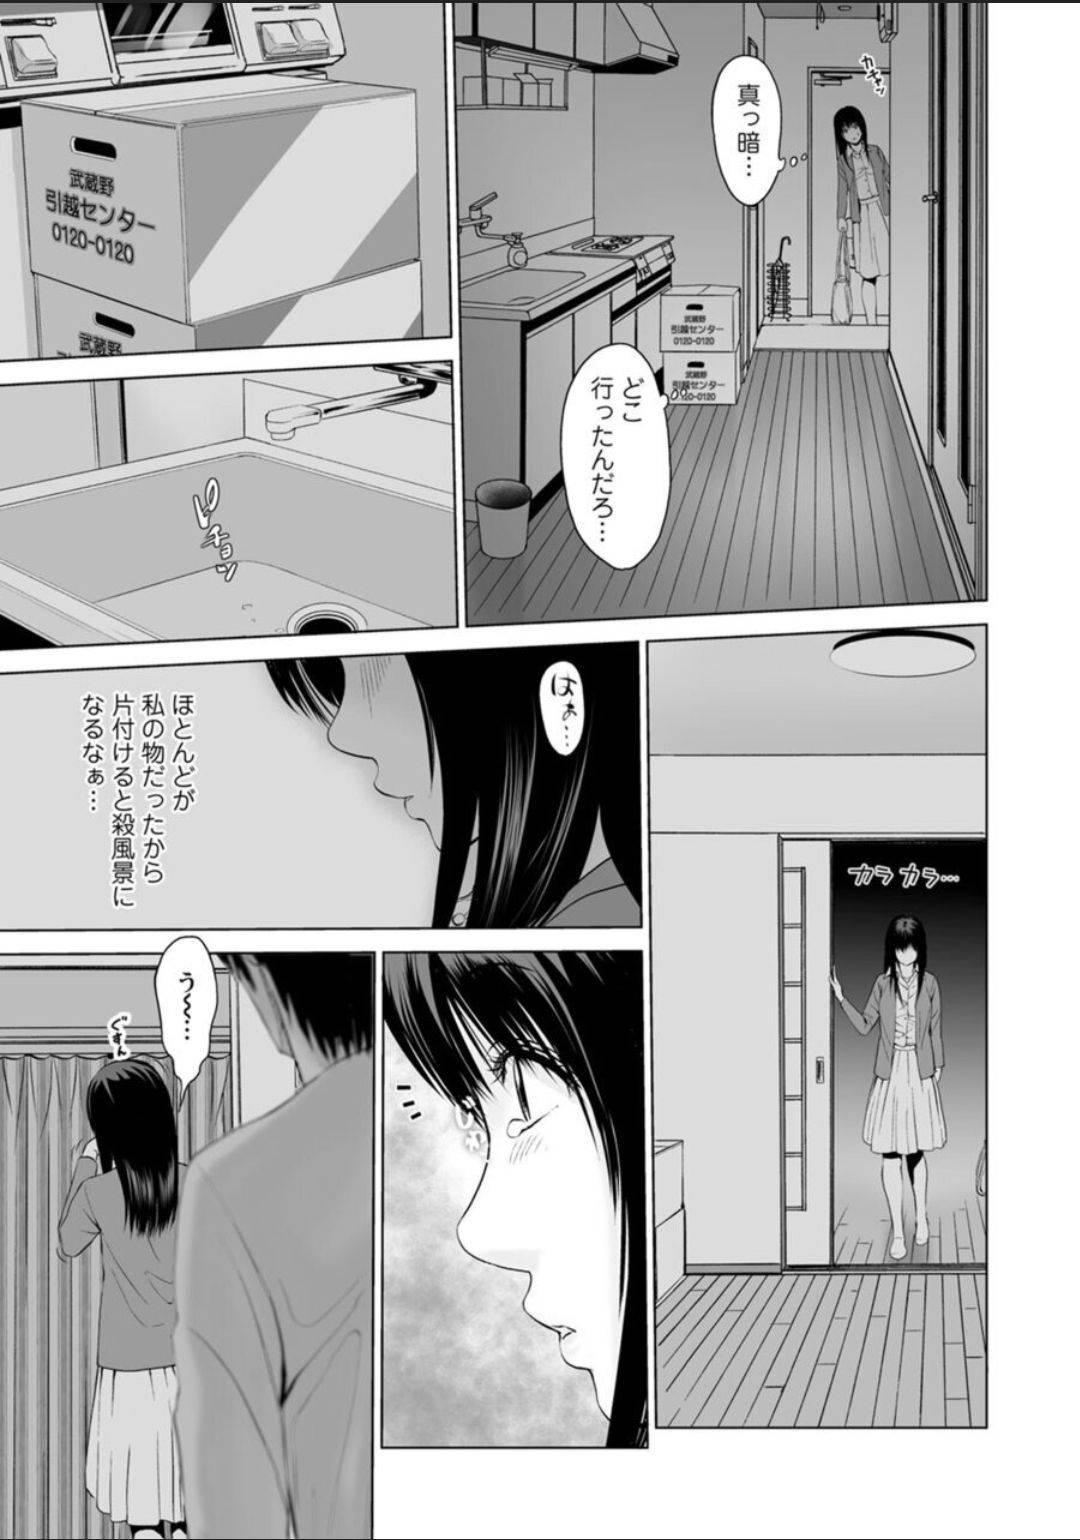 【エロ漫画】元カノは無職彼の家に行くと仕事が決まったと言われ流されるままセックスしてしまう【石紙一】